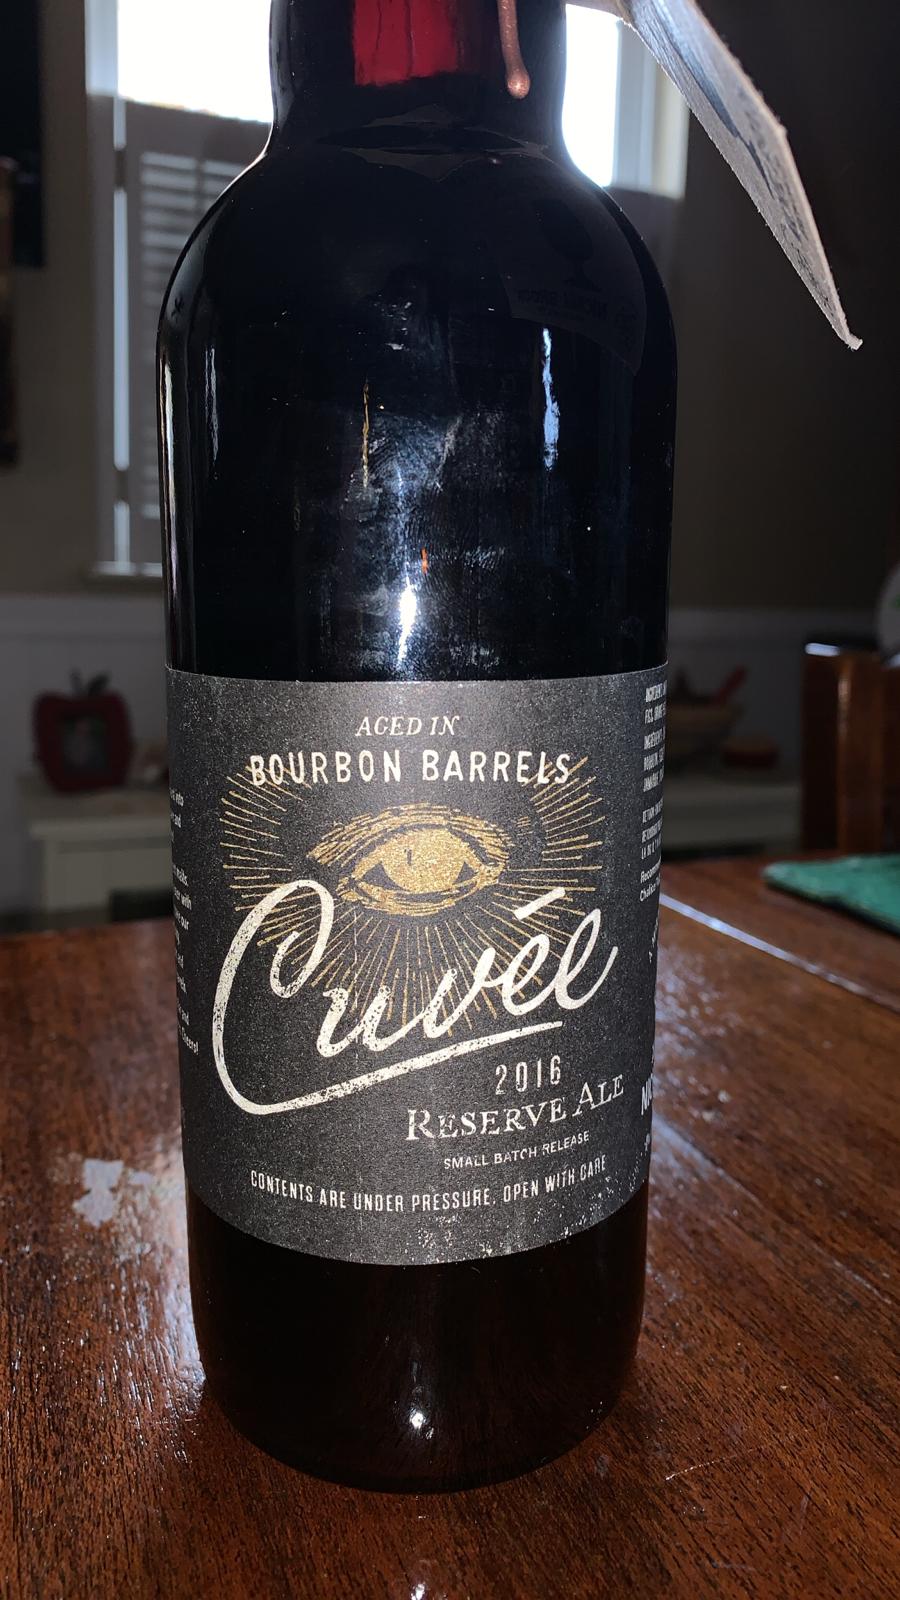 Cuvée (2016 Bourbon Barrel Aged)